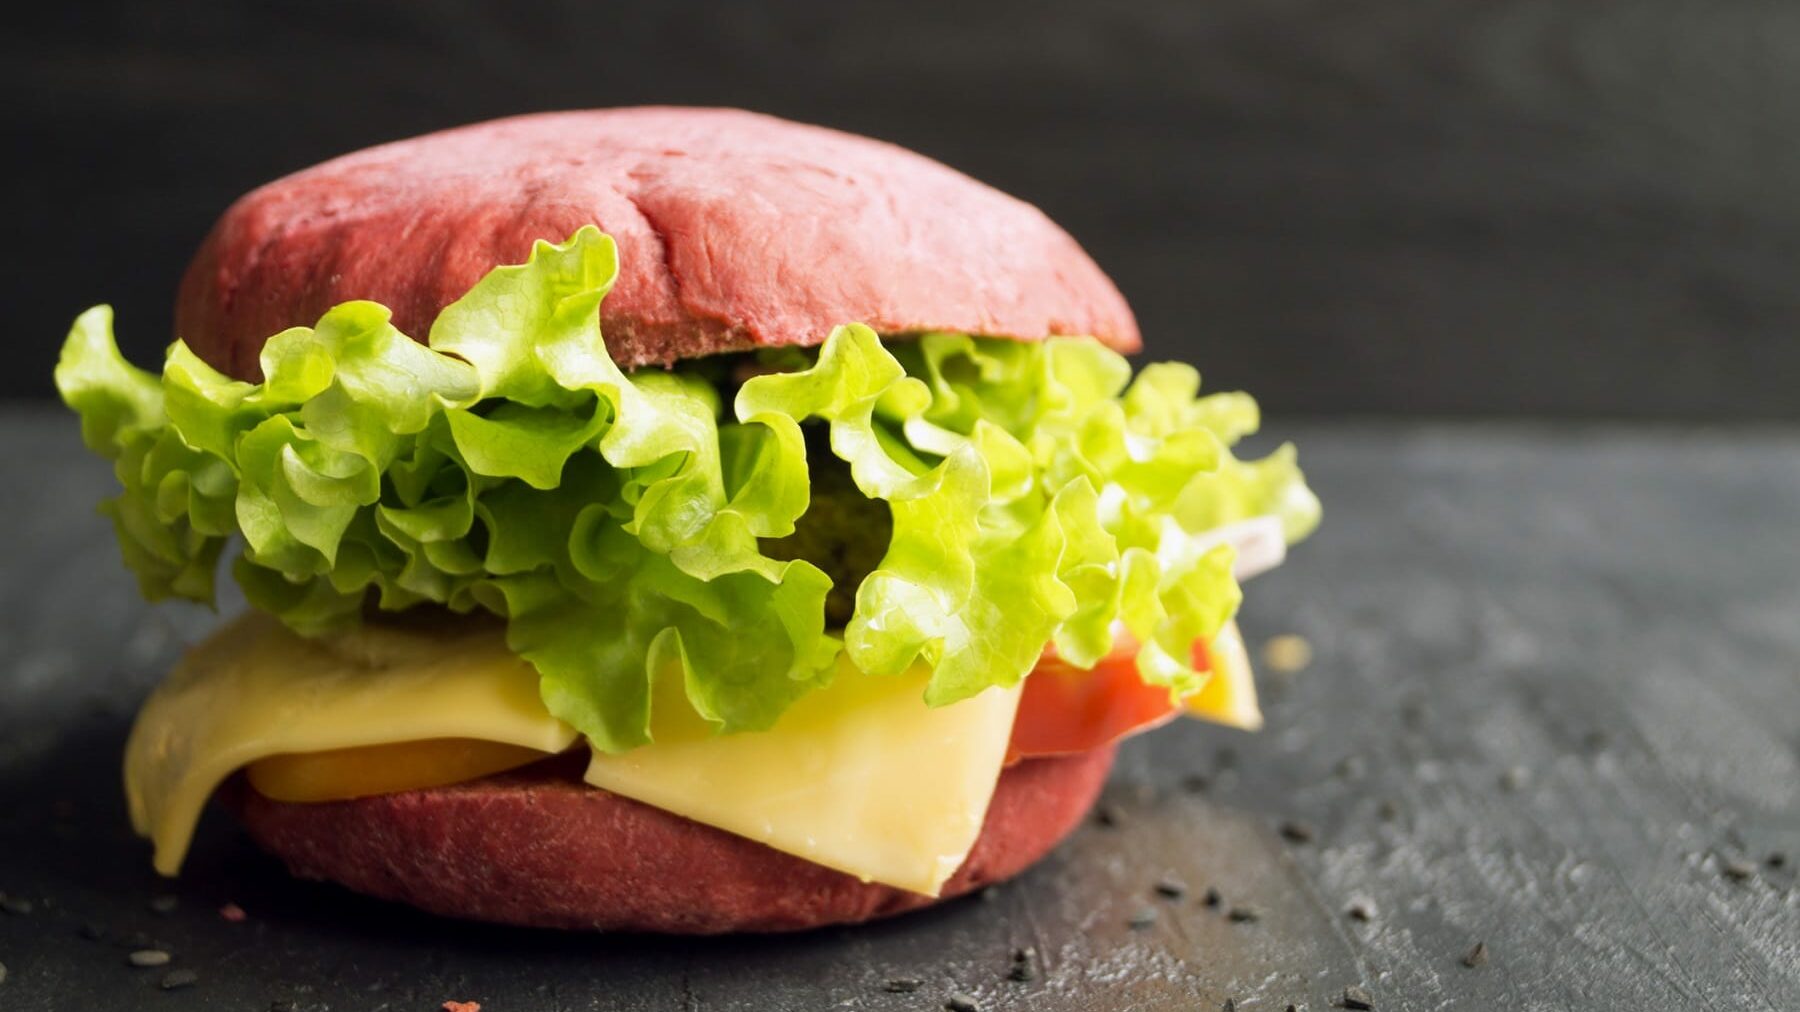 Ein Burger mit pinken Burger Buns, mit Salat, Käse und Tomaten steht auf einem schwarzen Holztisch. Auf dem Tisch verteilt liegen Sesamsamen. Der Hintergrund ist ebenfalls schwarz.